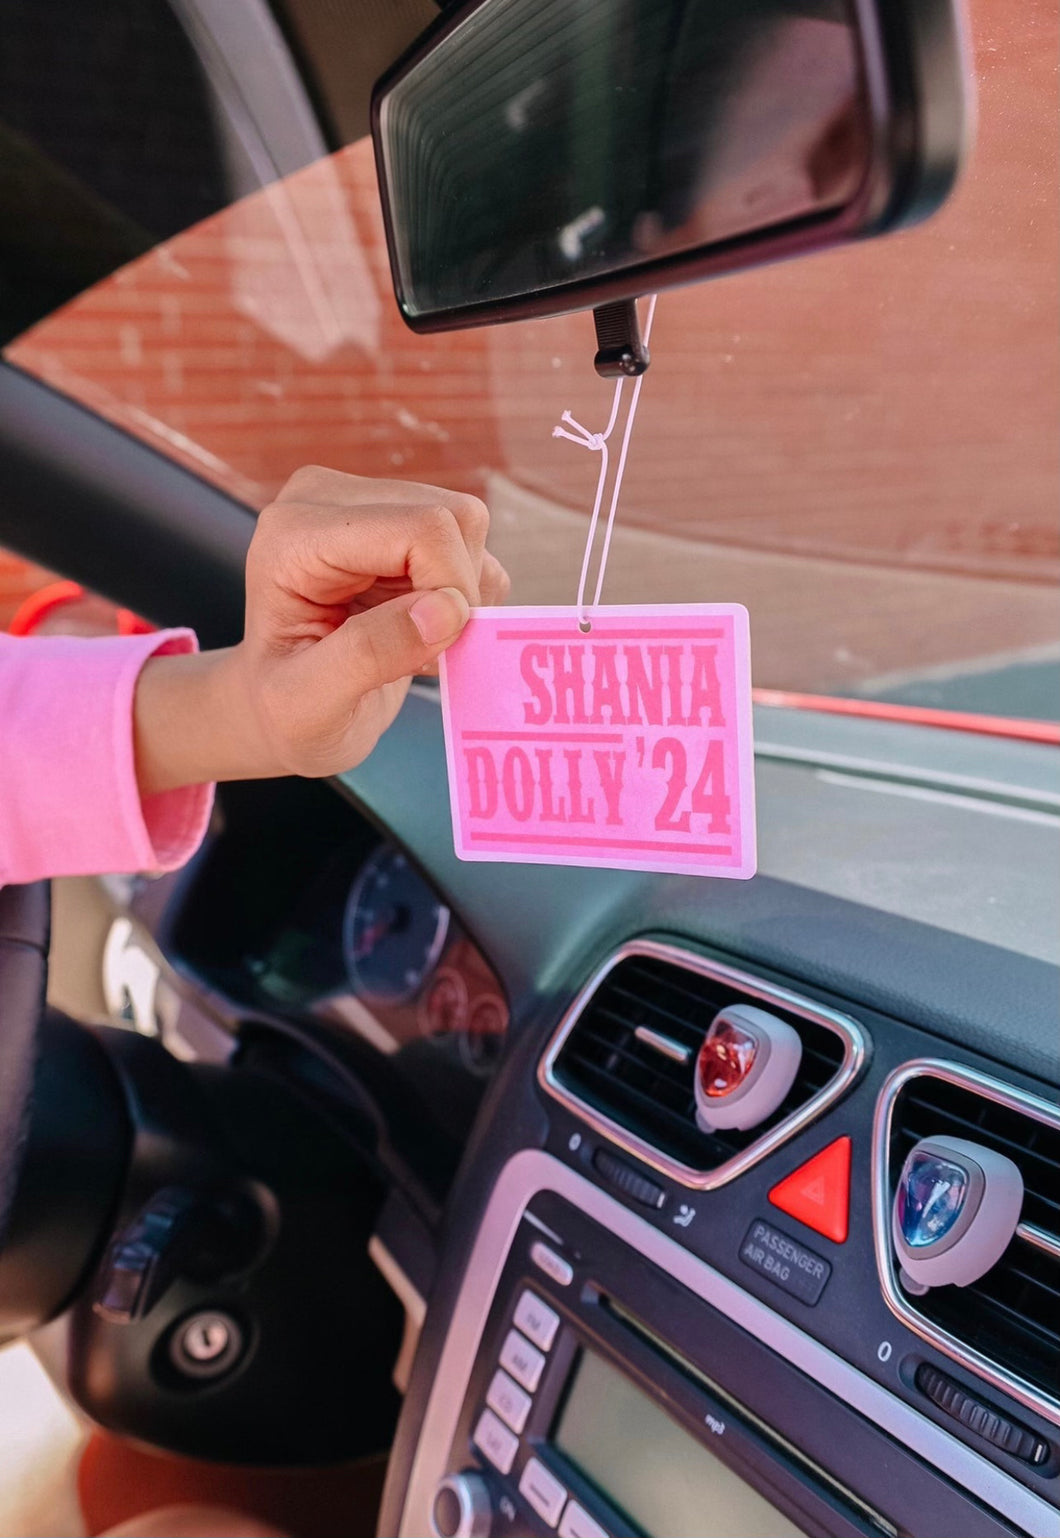 Shania Dolly ‘24 Air Freshener